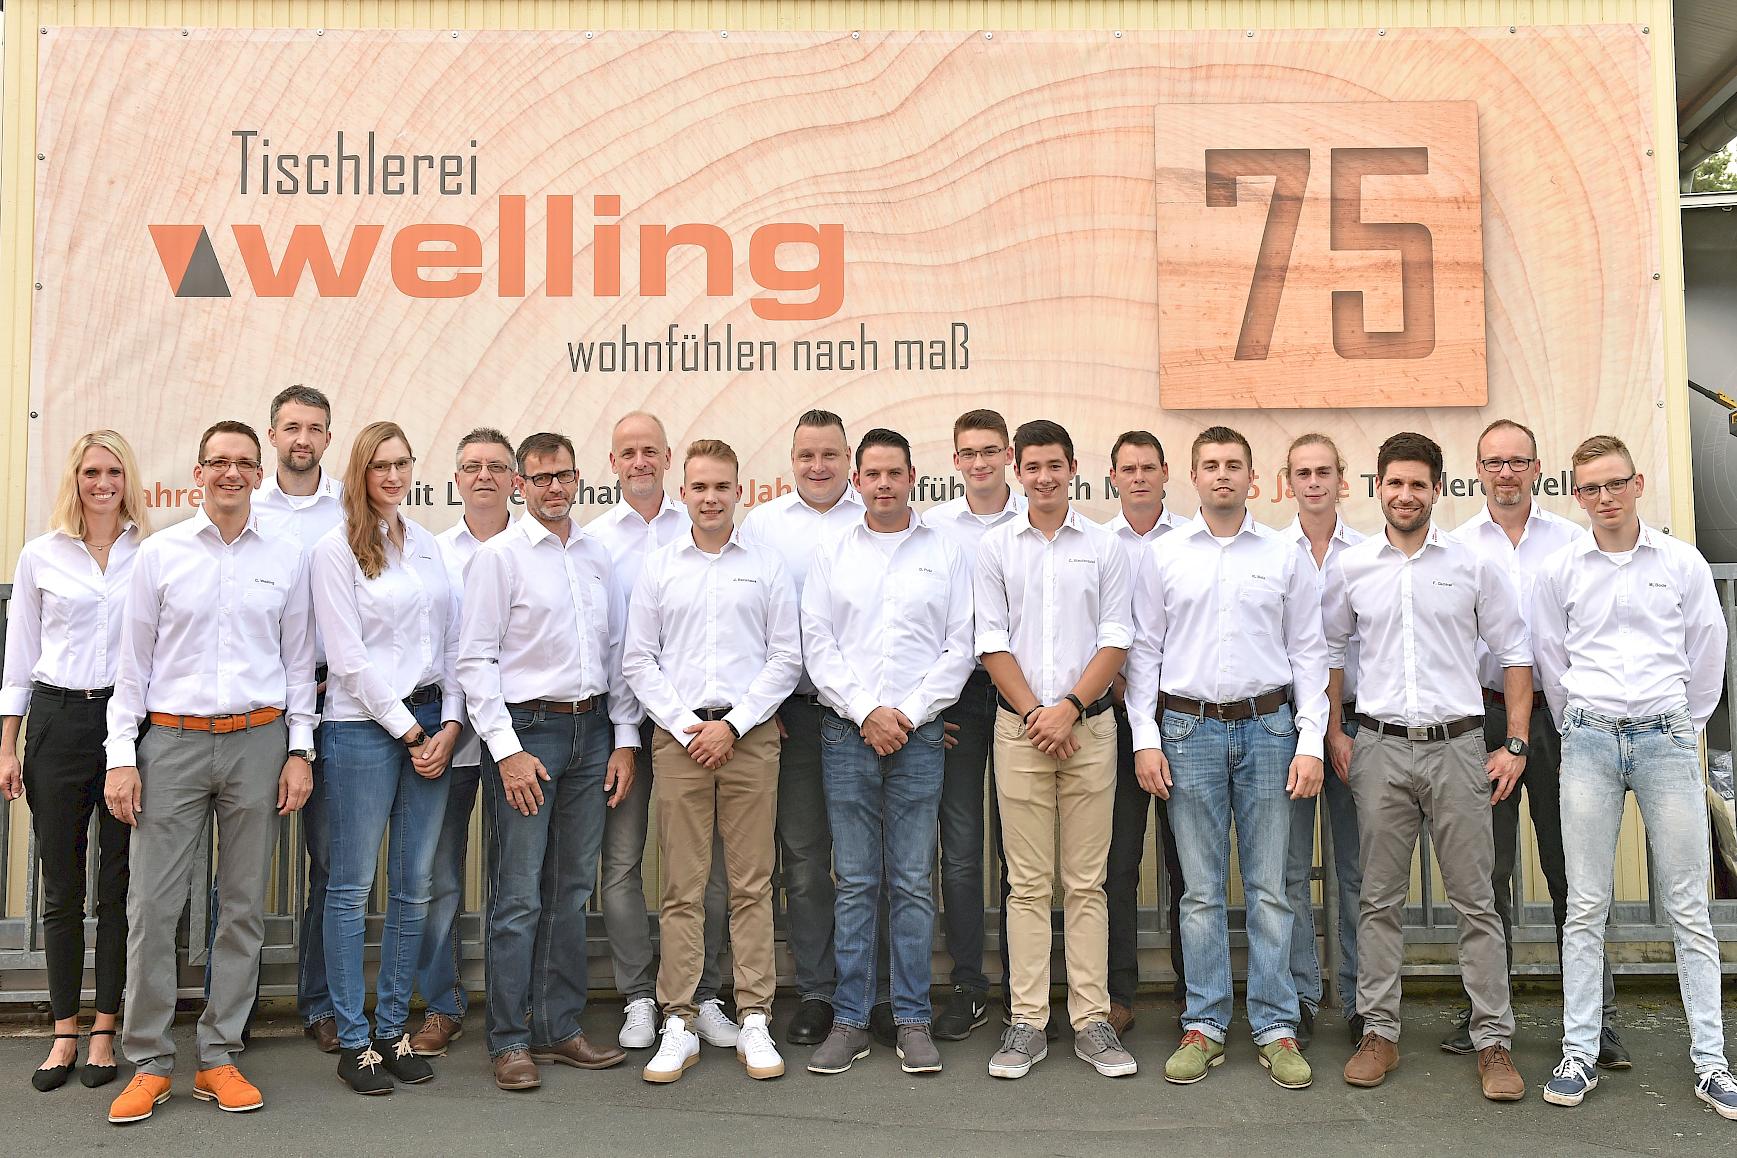 Teamfoto bei der 75 Jahr-Feier der Tischlerei Welling in Göttingen